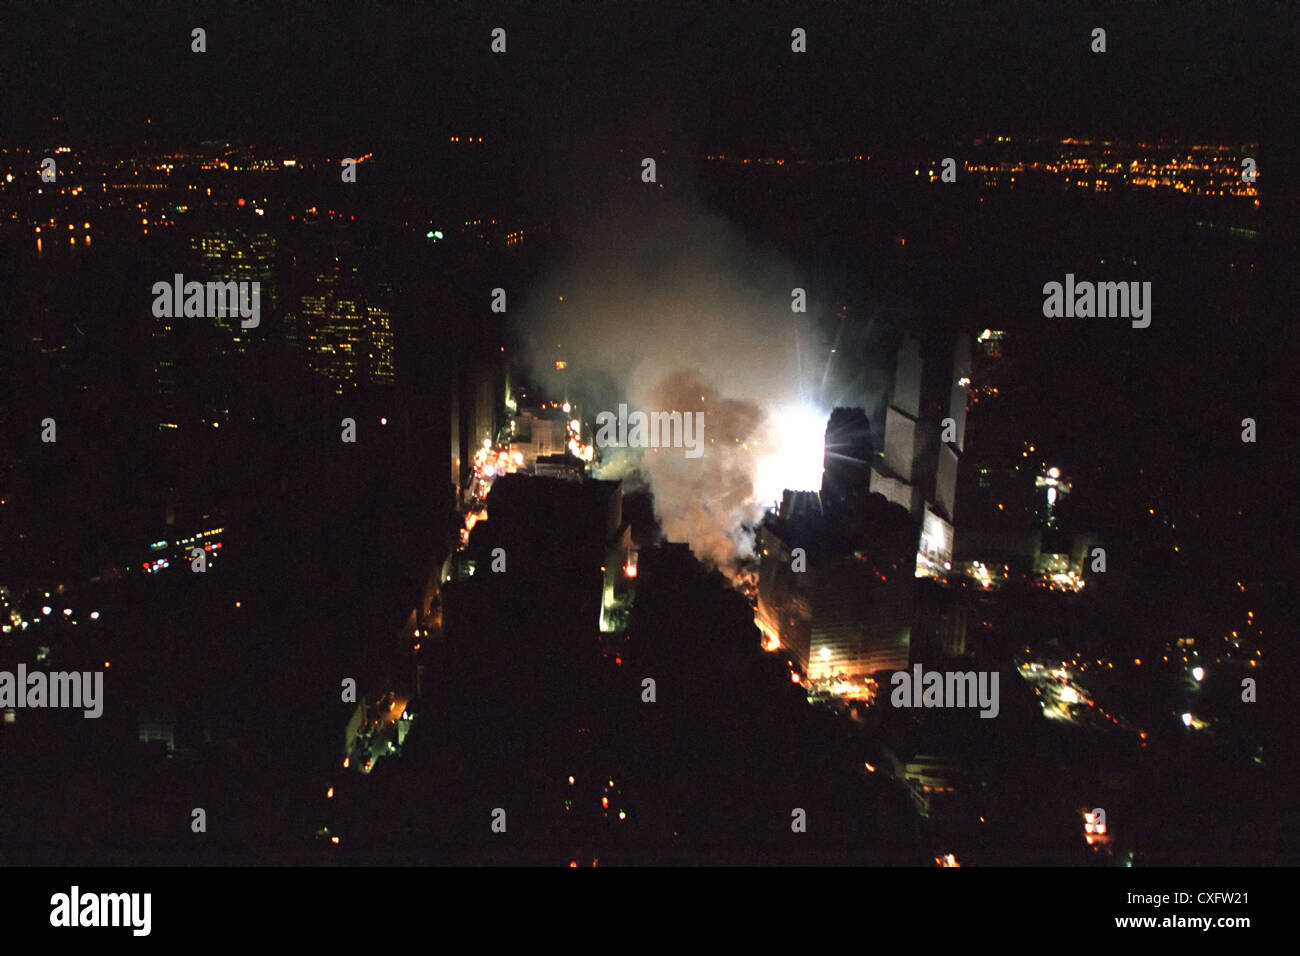 Das World Trade Center Site terroristischer Anschläge weiterhin 14. September 2001 zu rauchen, wie in der Nacht vom Marine One in New York City zu sehen. Stockfoto